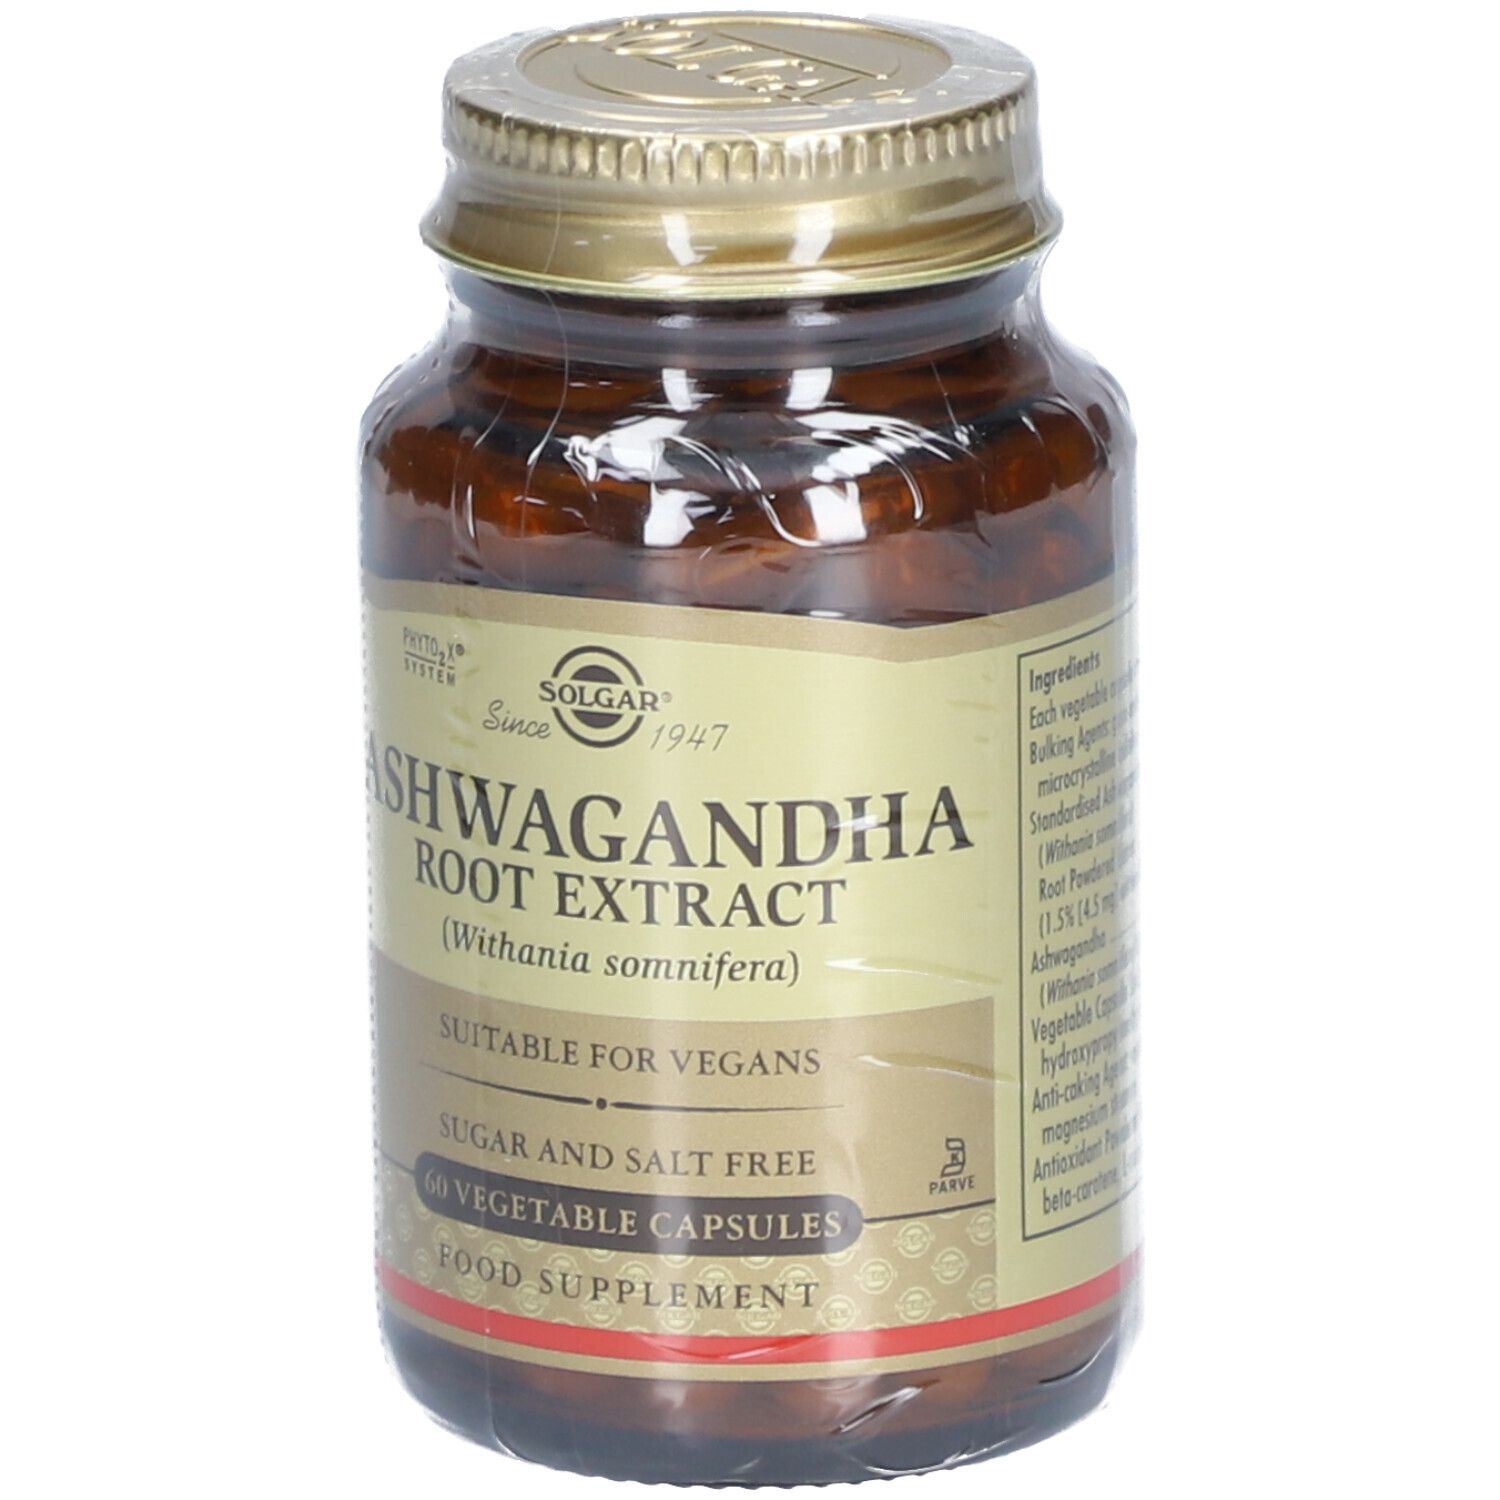 ashwagandha root extract